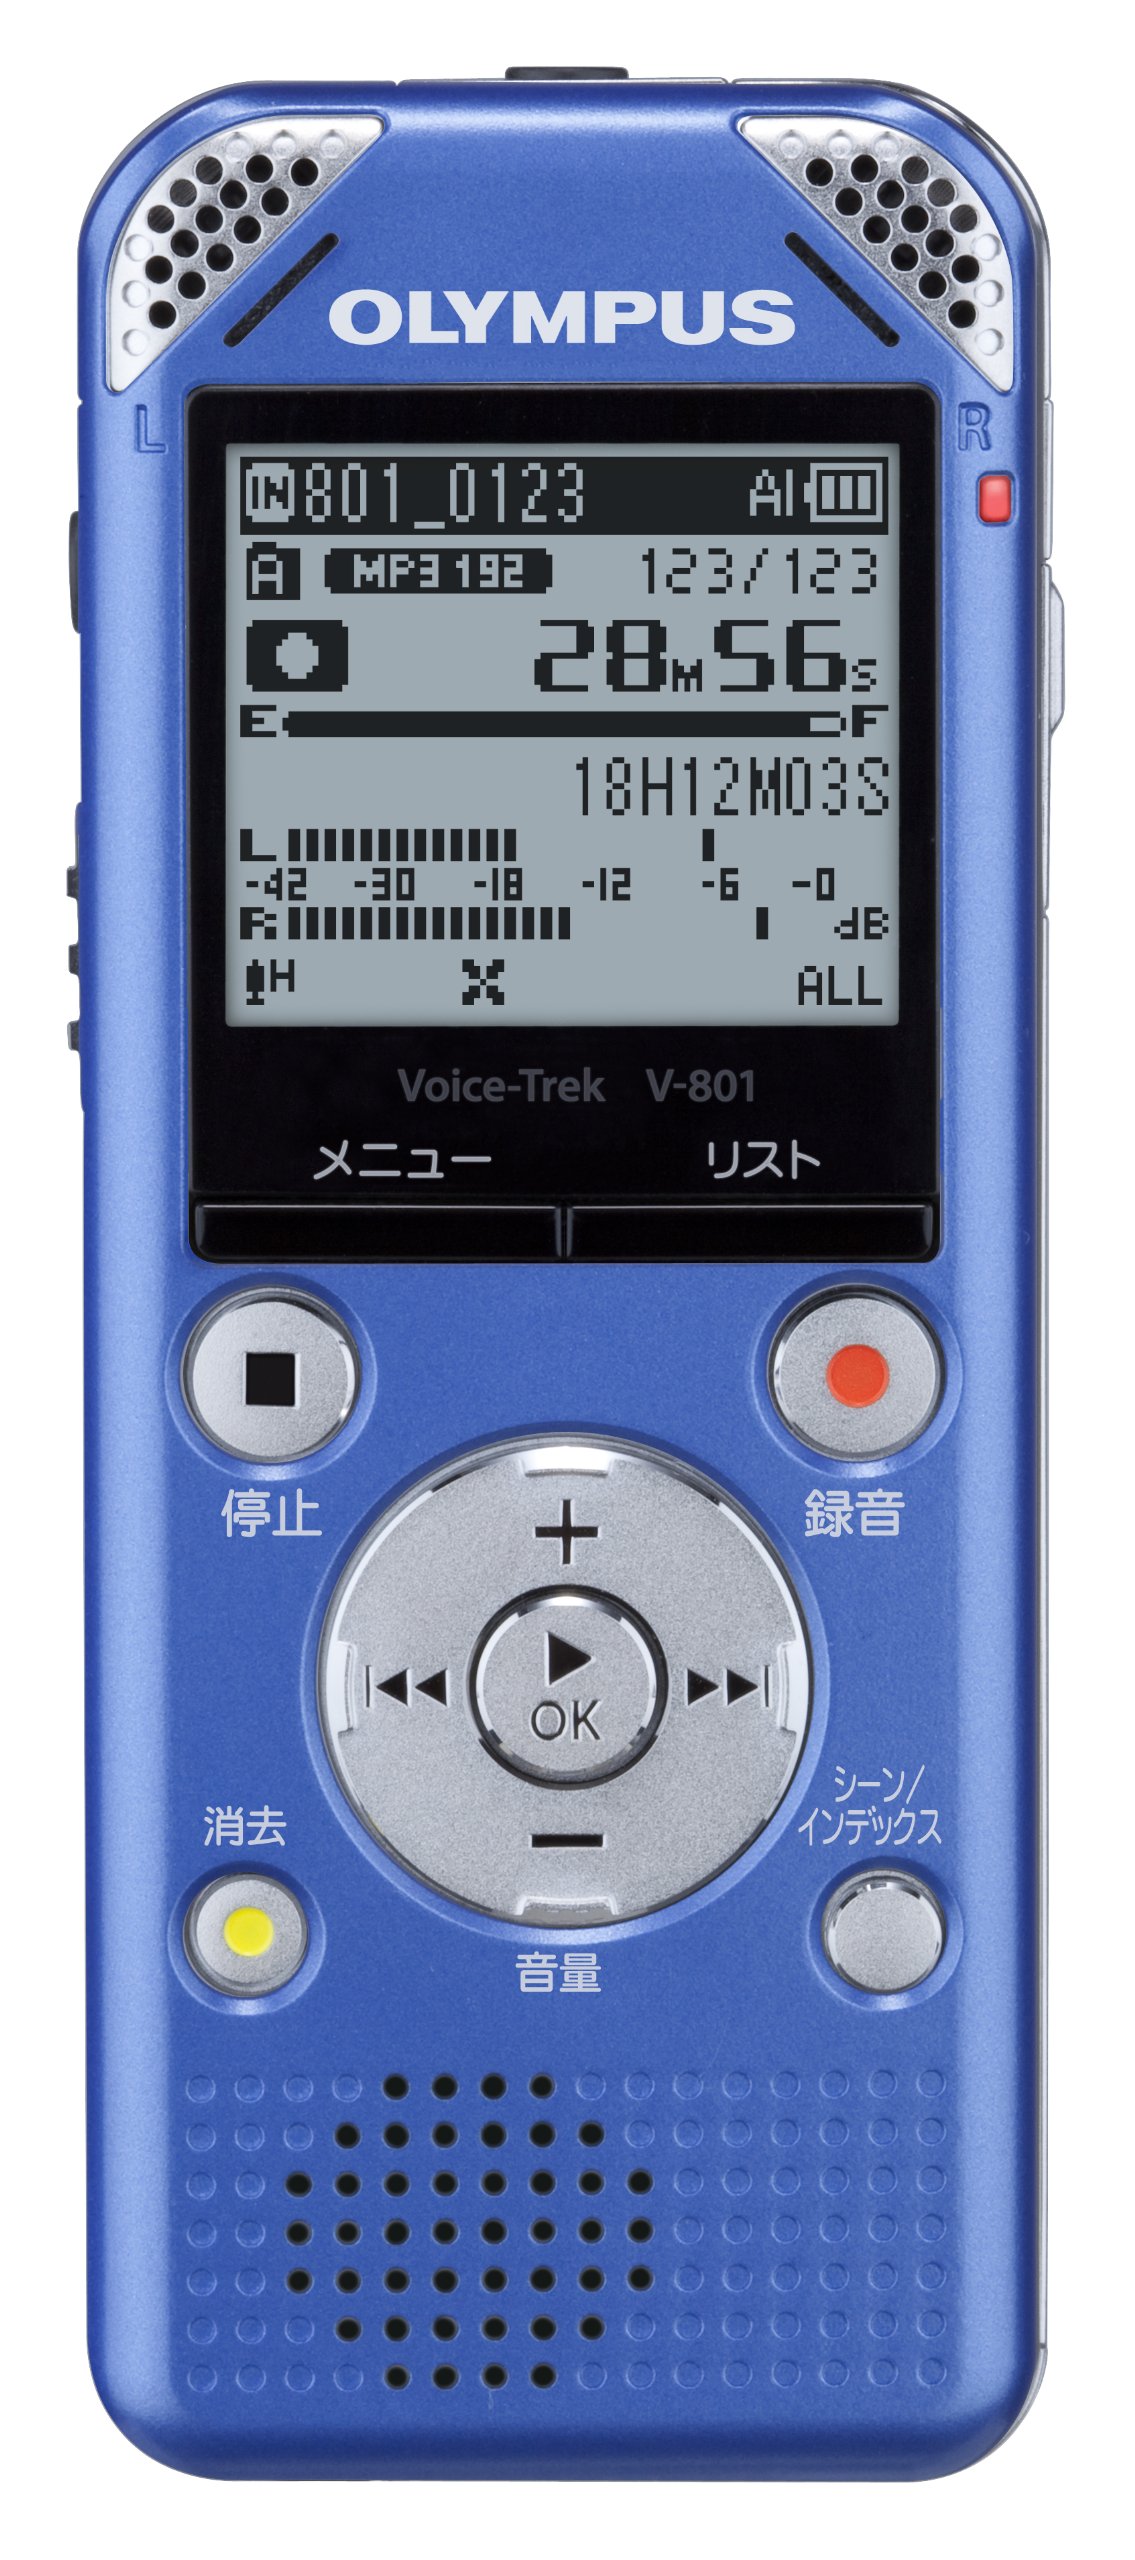 オリンパス V-801 LBL［Voice-Trek V-801 ライトブルー］ ICレコーダーの商品画像